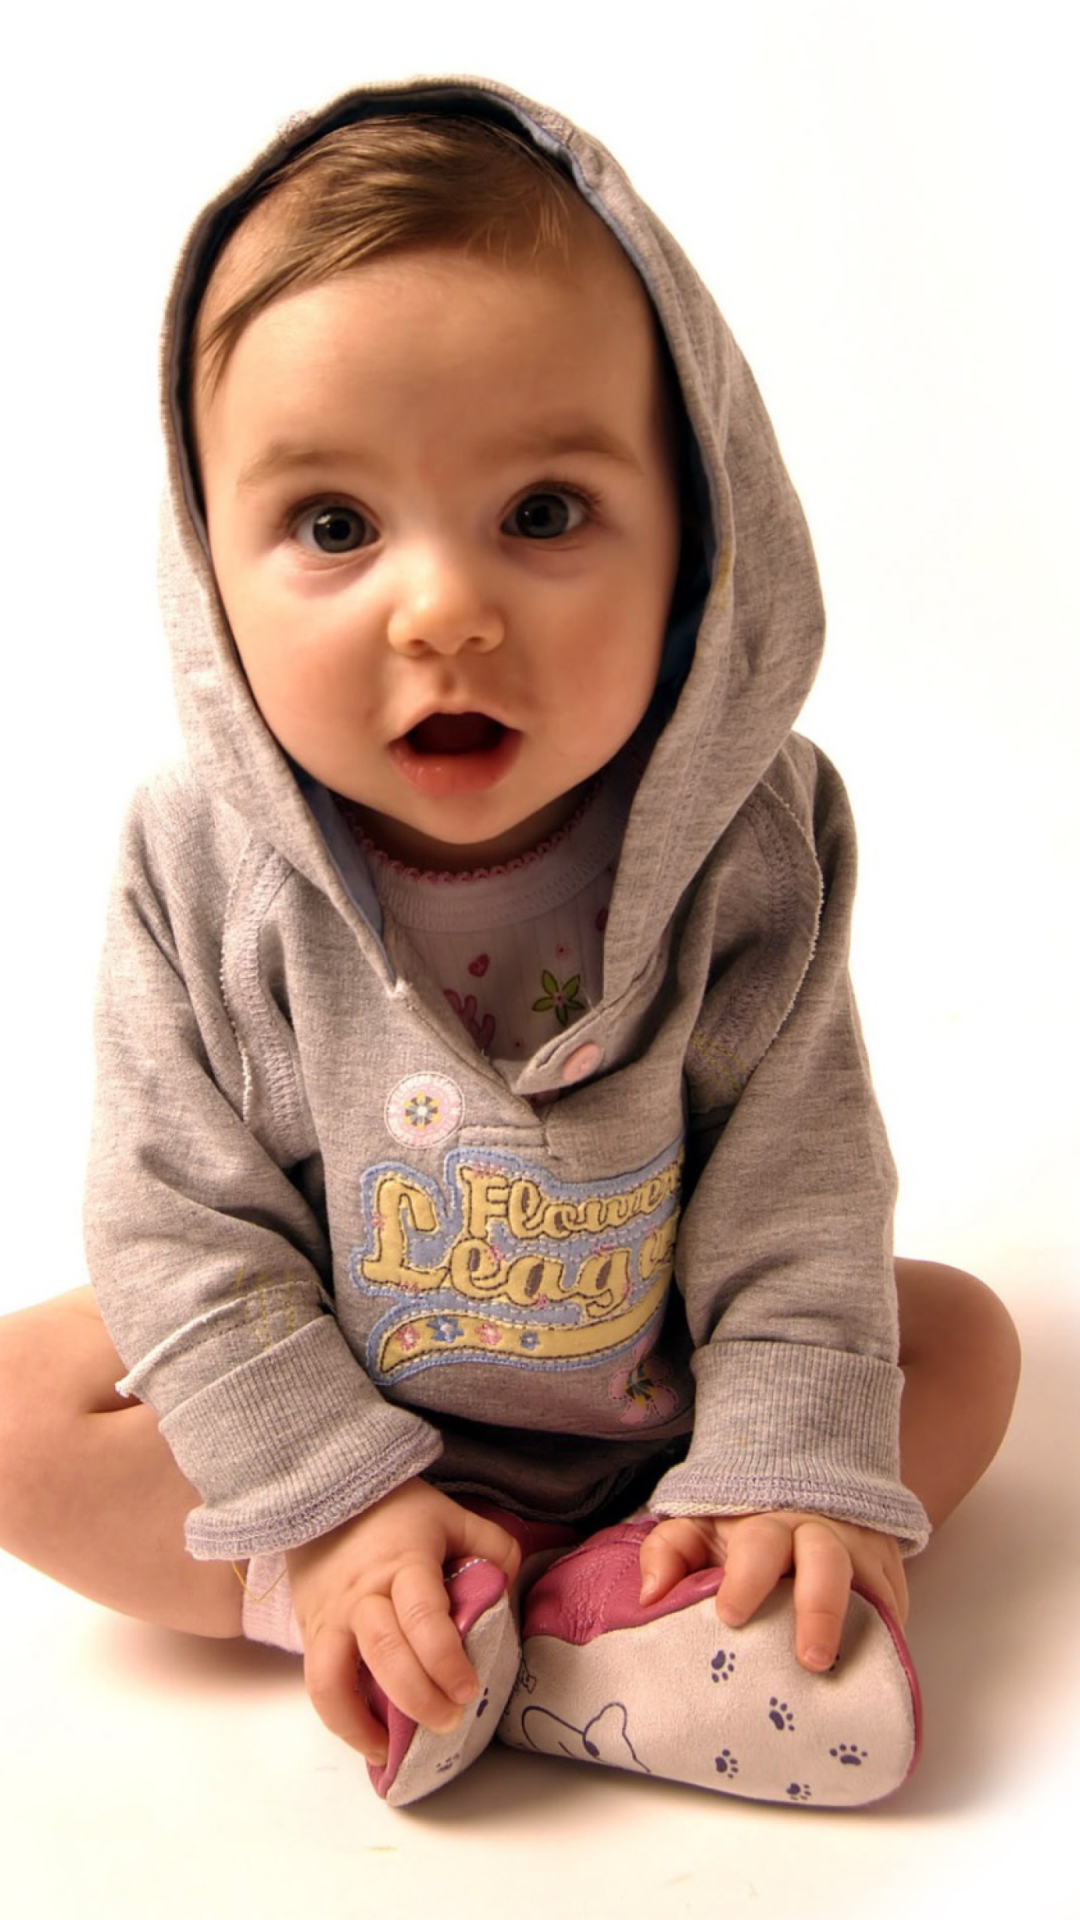 Das Cute Little Baby Boy Wallpaper 1080x1920